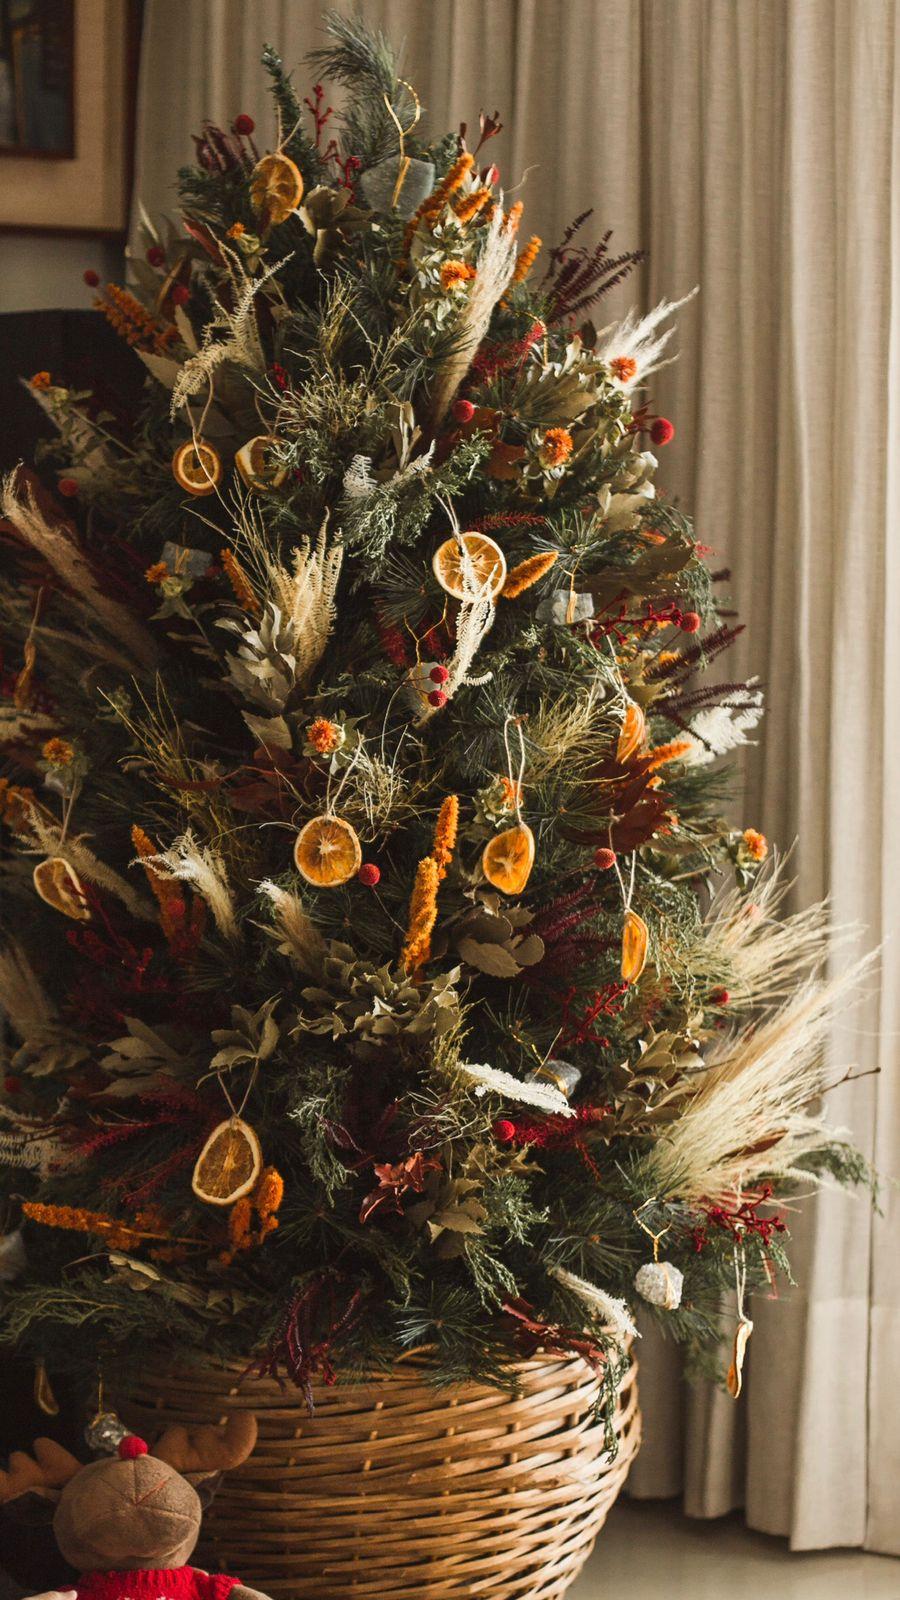 Então é Natal: confira dicas para montar uma árvore artesanal em família -  Verso - Diário do Nordeste